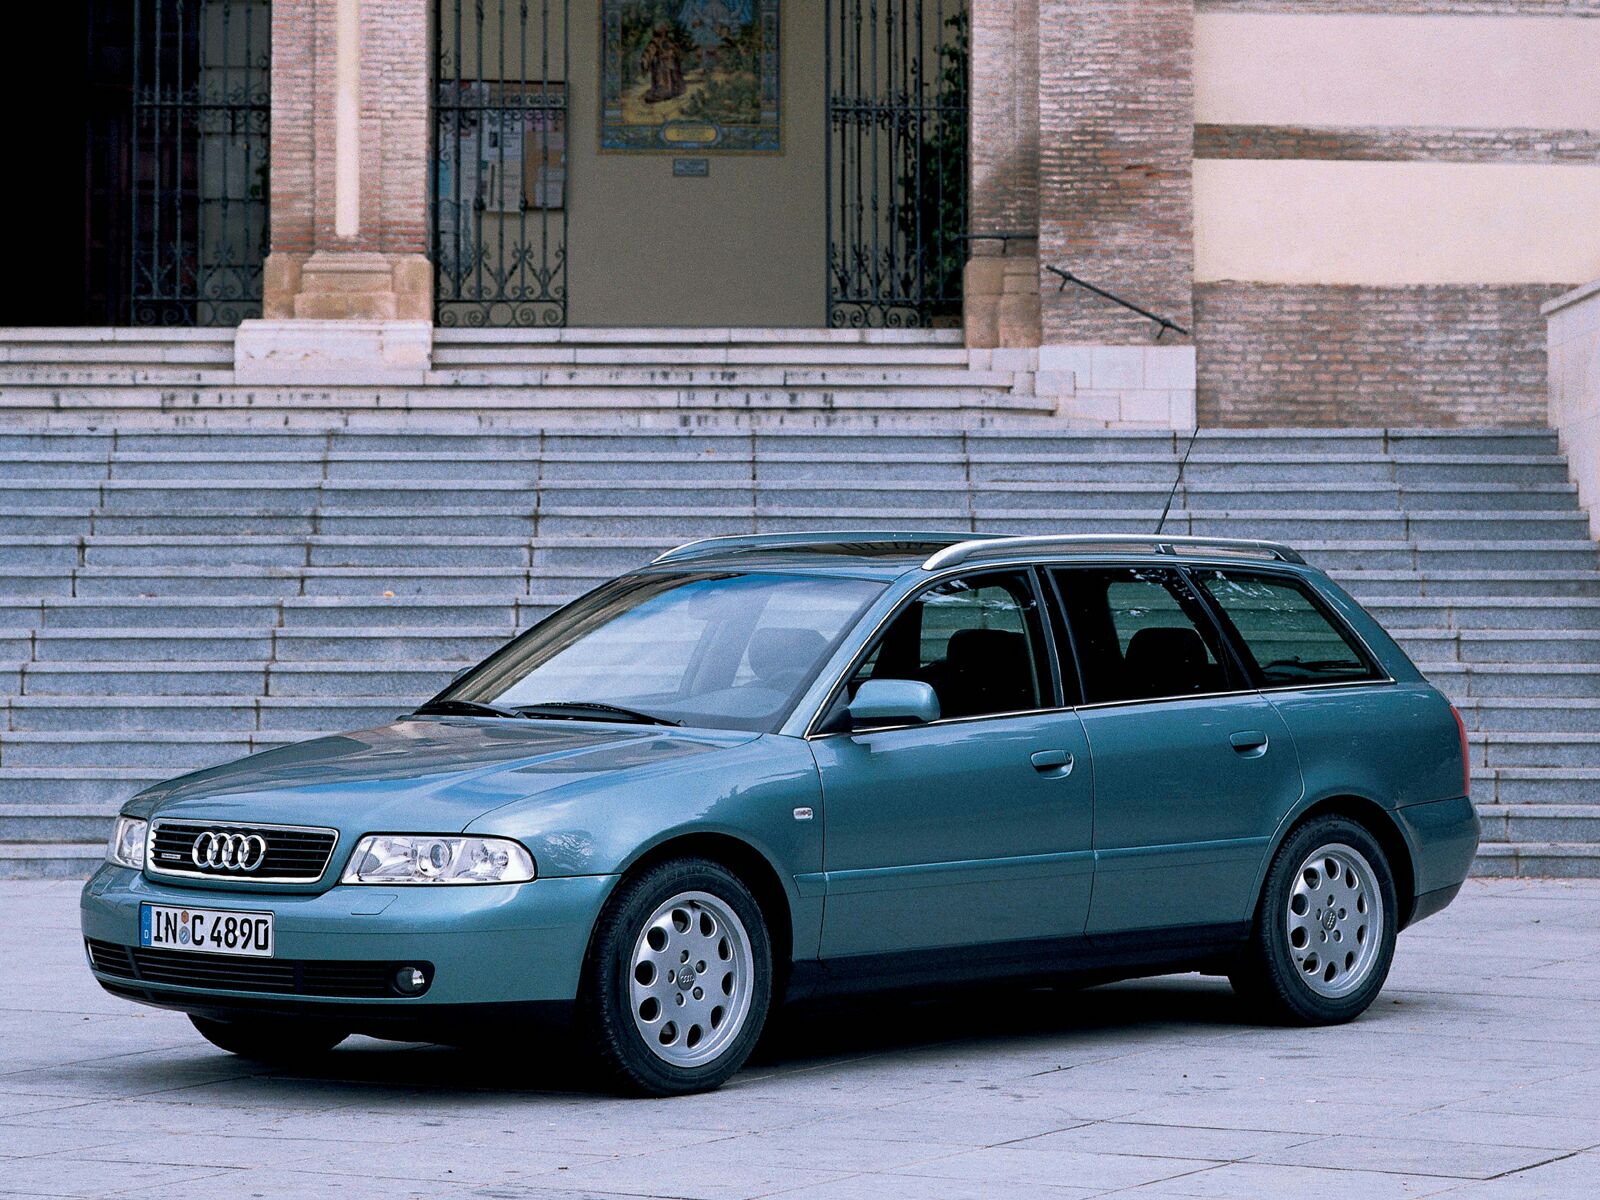 Ауди б5 универсал купить. Ауди а4 Авант 2000. Audi a4 универсал 2000. Audi a4 b5 Wagon. Audi a4 2001 универсал.